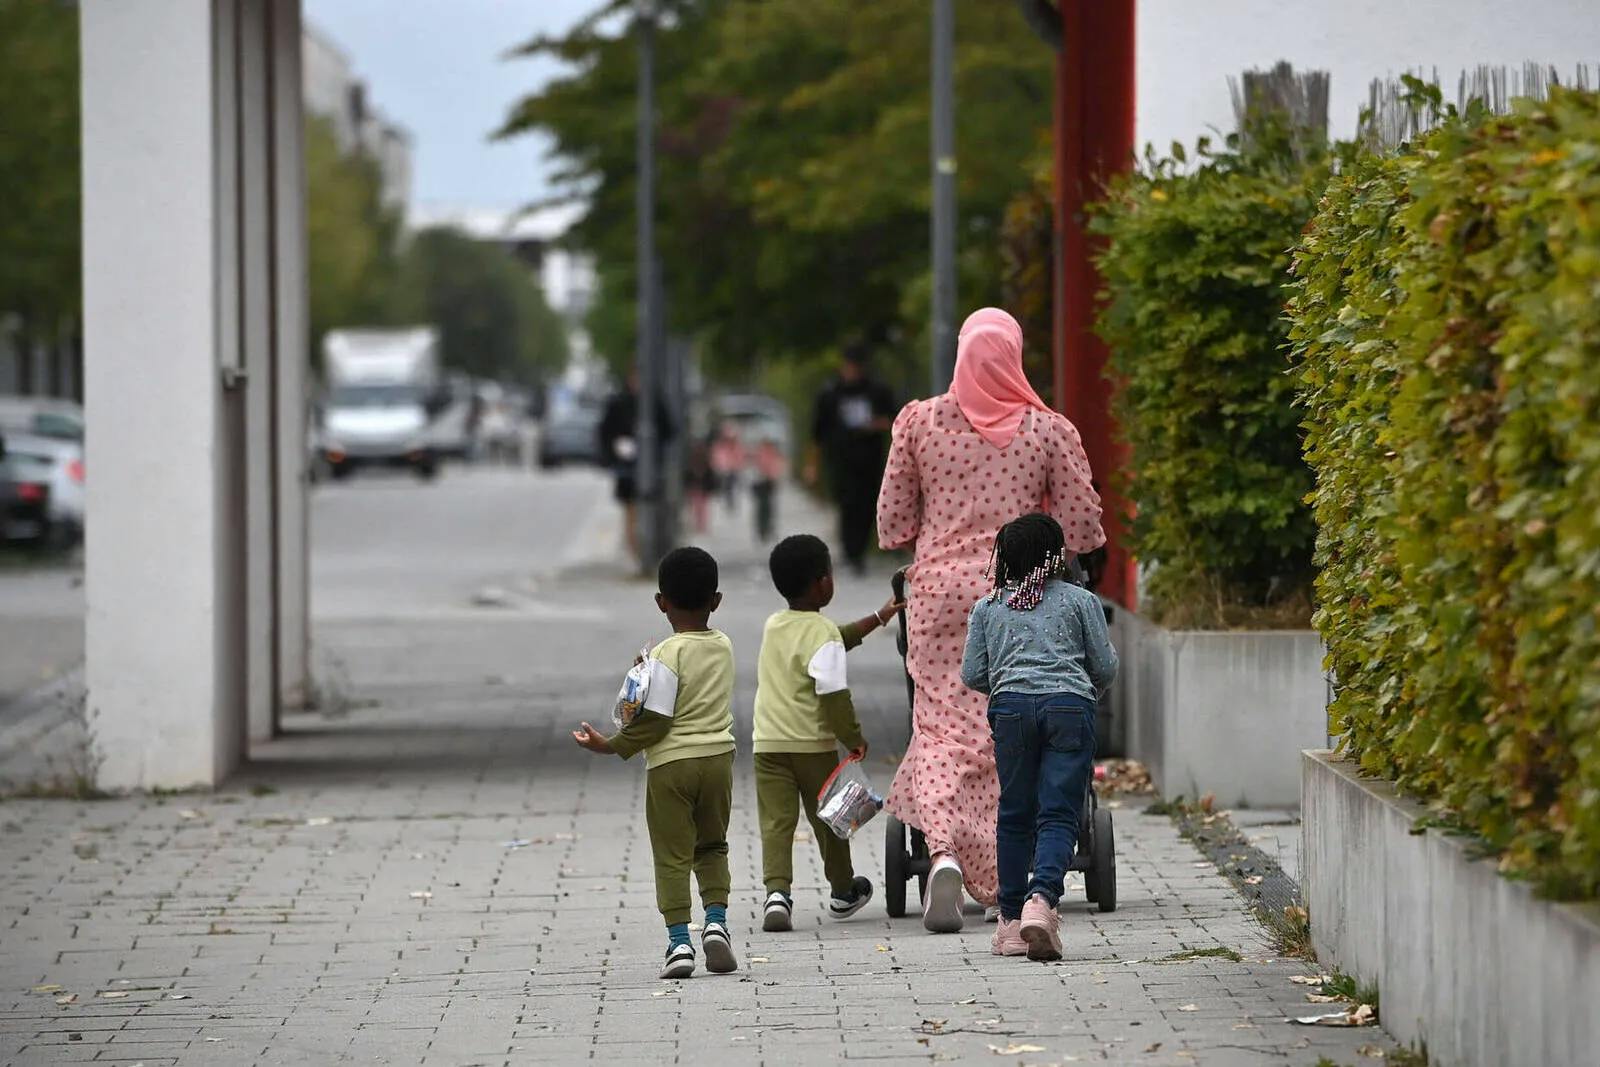 Politikwissenschaftlerin: „Deutschland hat nicht zu viel, sondern zu wenig Zuwanderung“